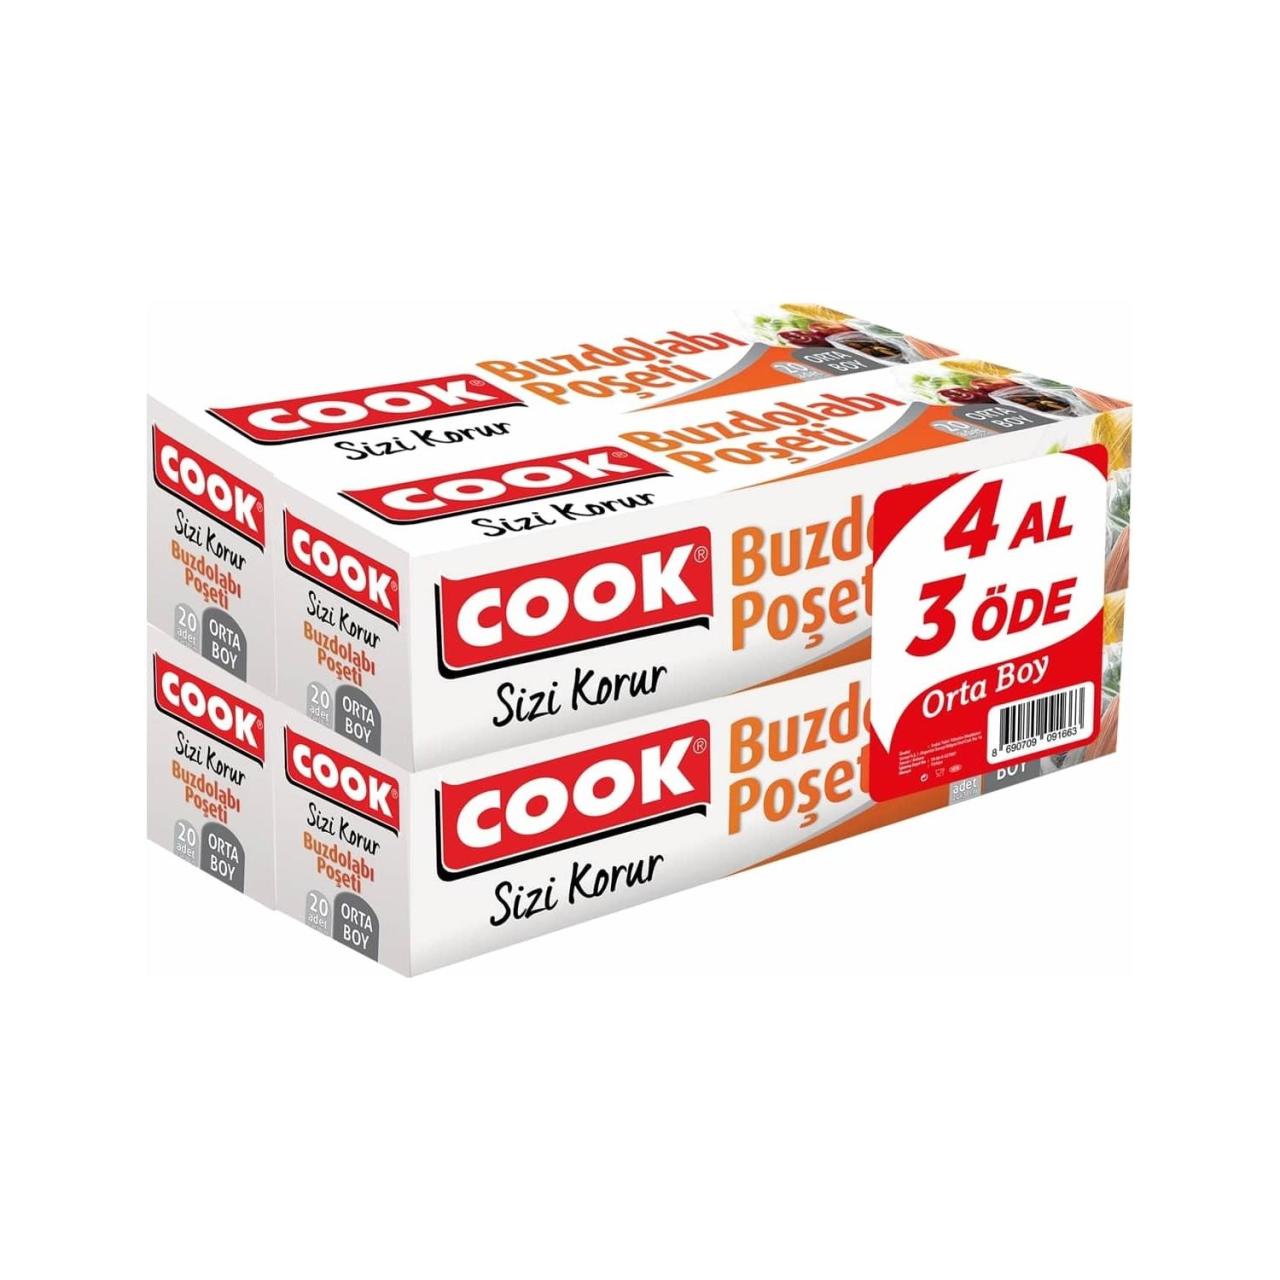 Cook 3+1 Ekononik Paket Buzdolabı Poşeti Orta Boy 24 X 38 Cm (4 Al 3 Öde)